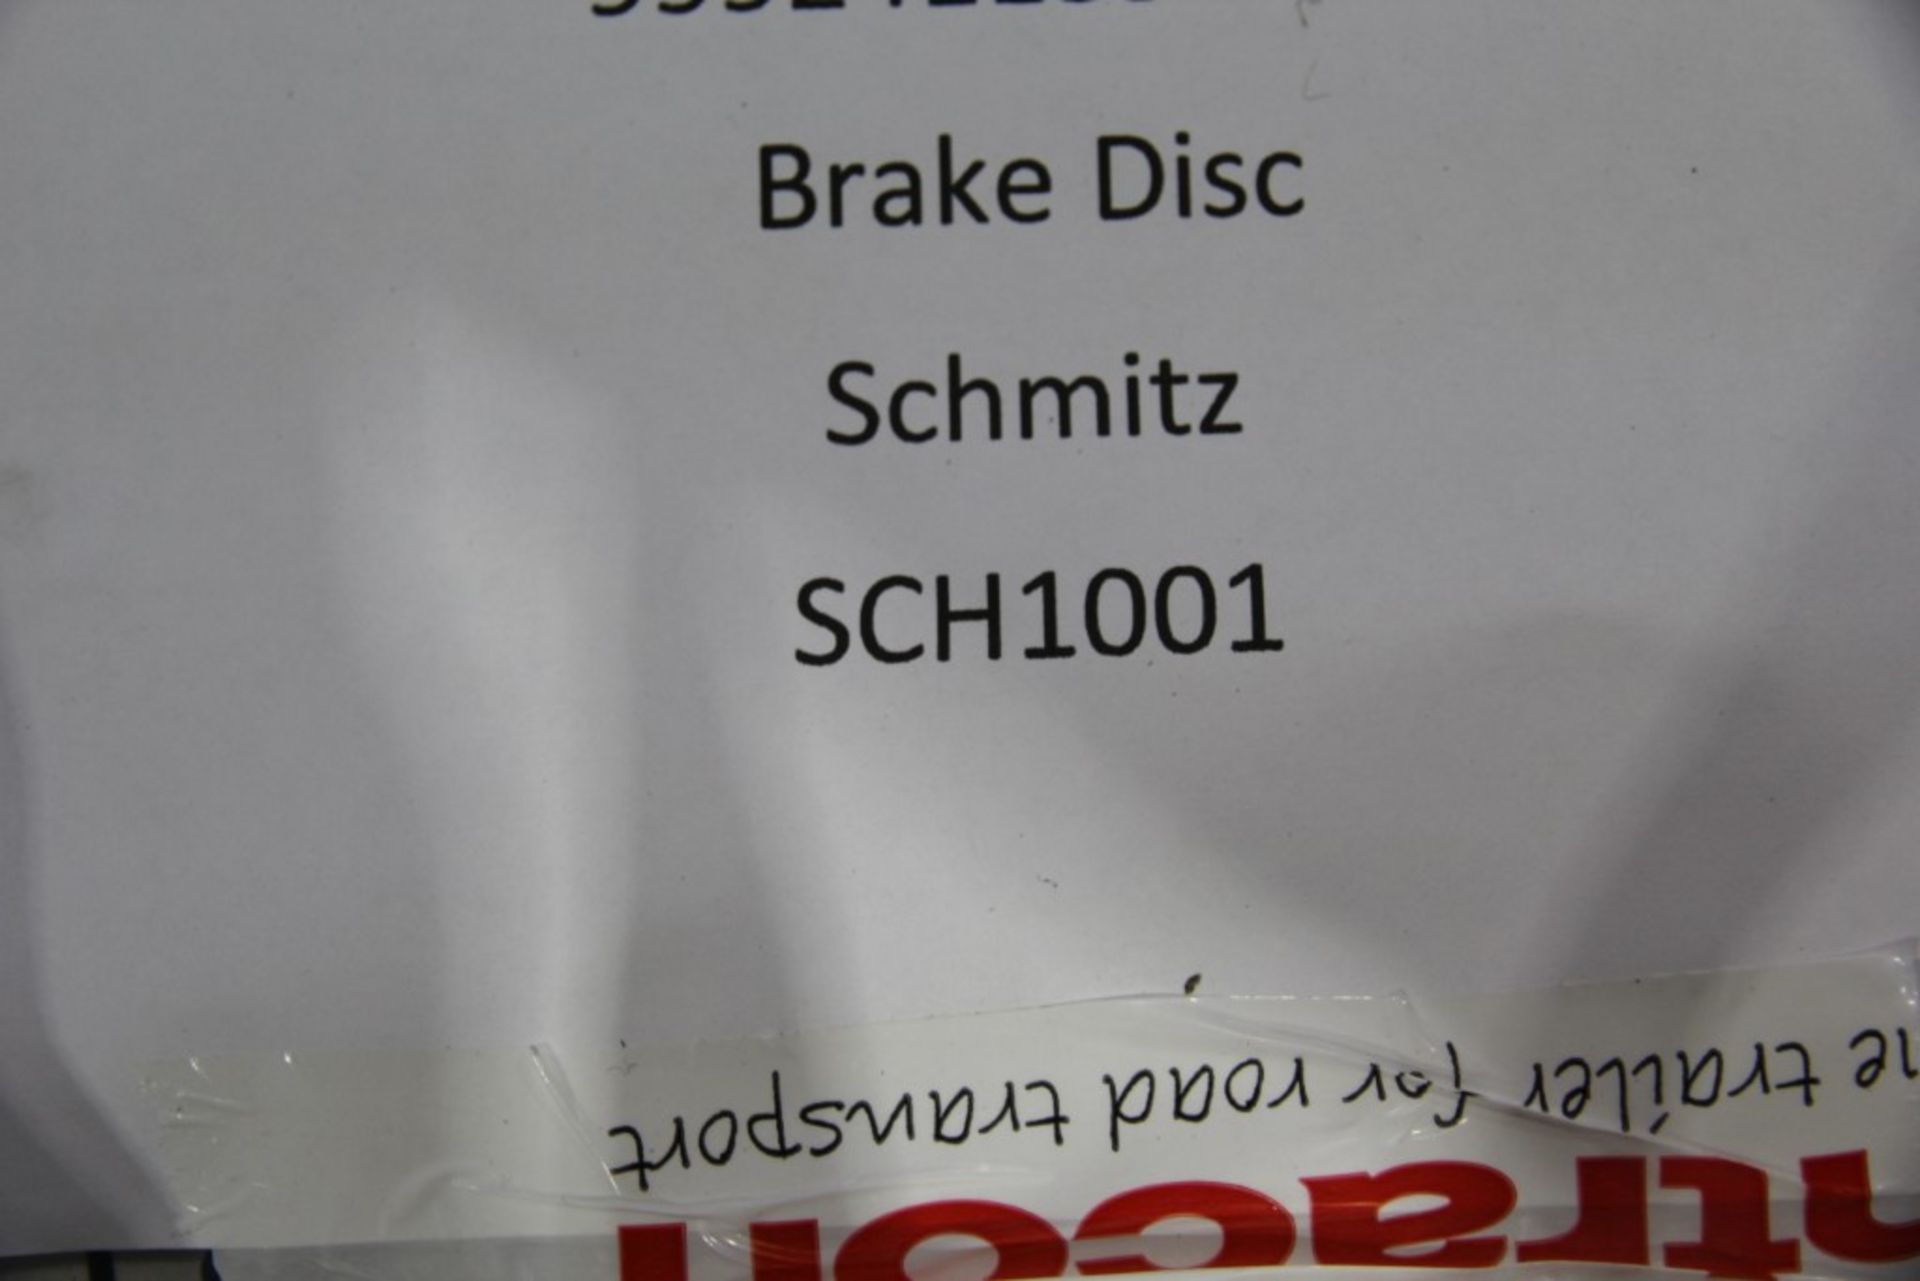 Schmitz / Winnard Brake Discs (6 of) - Image 3 of 3